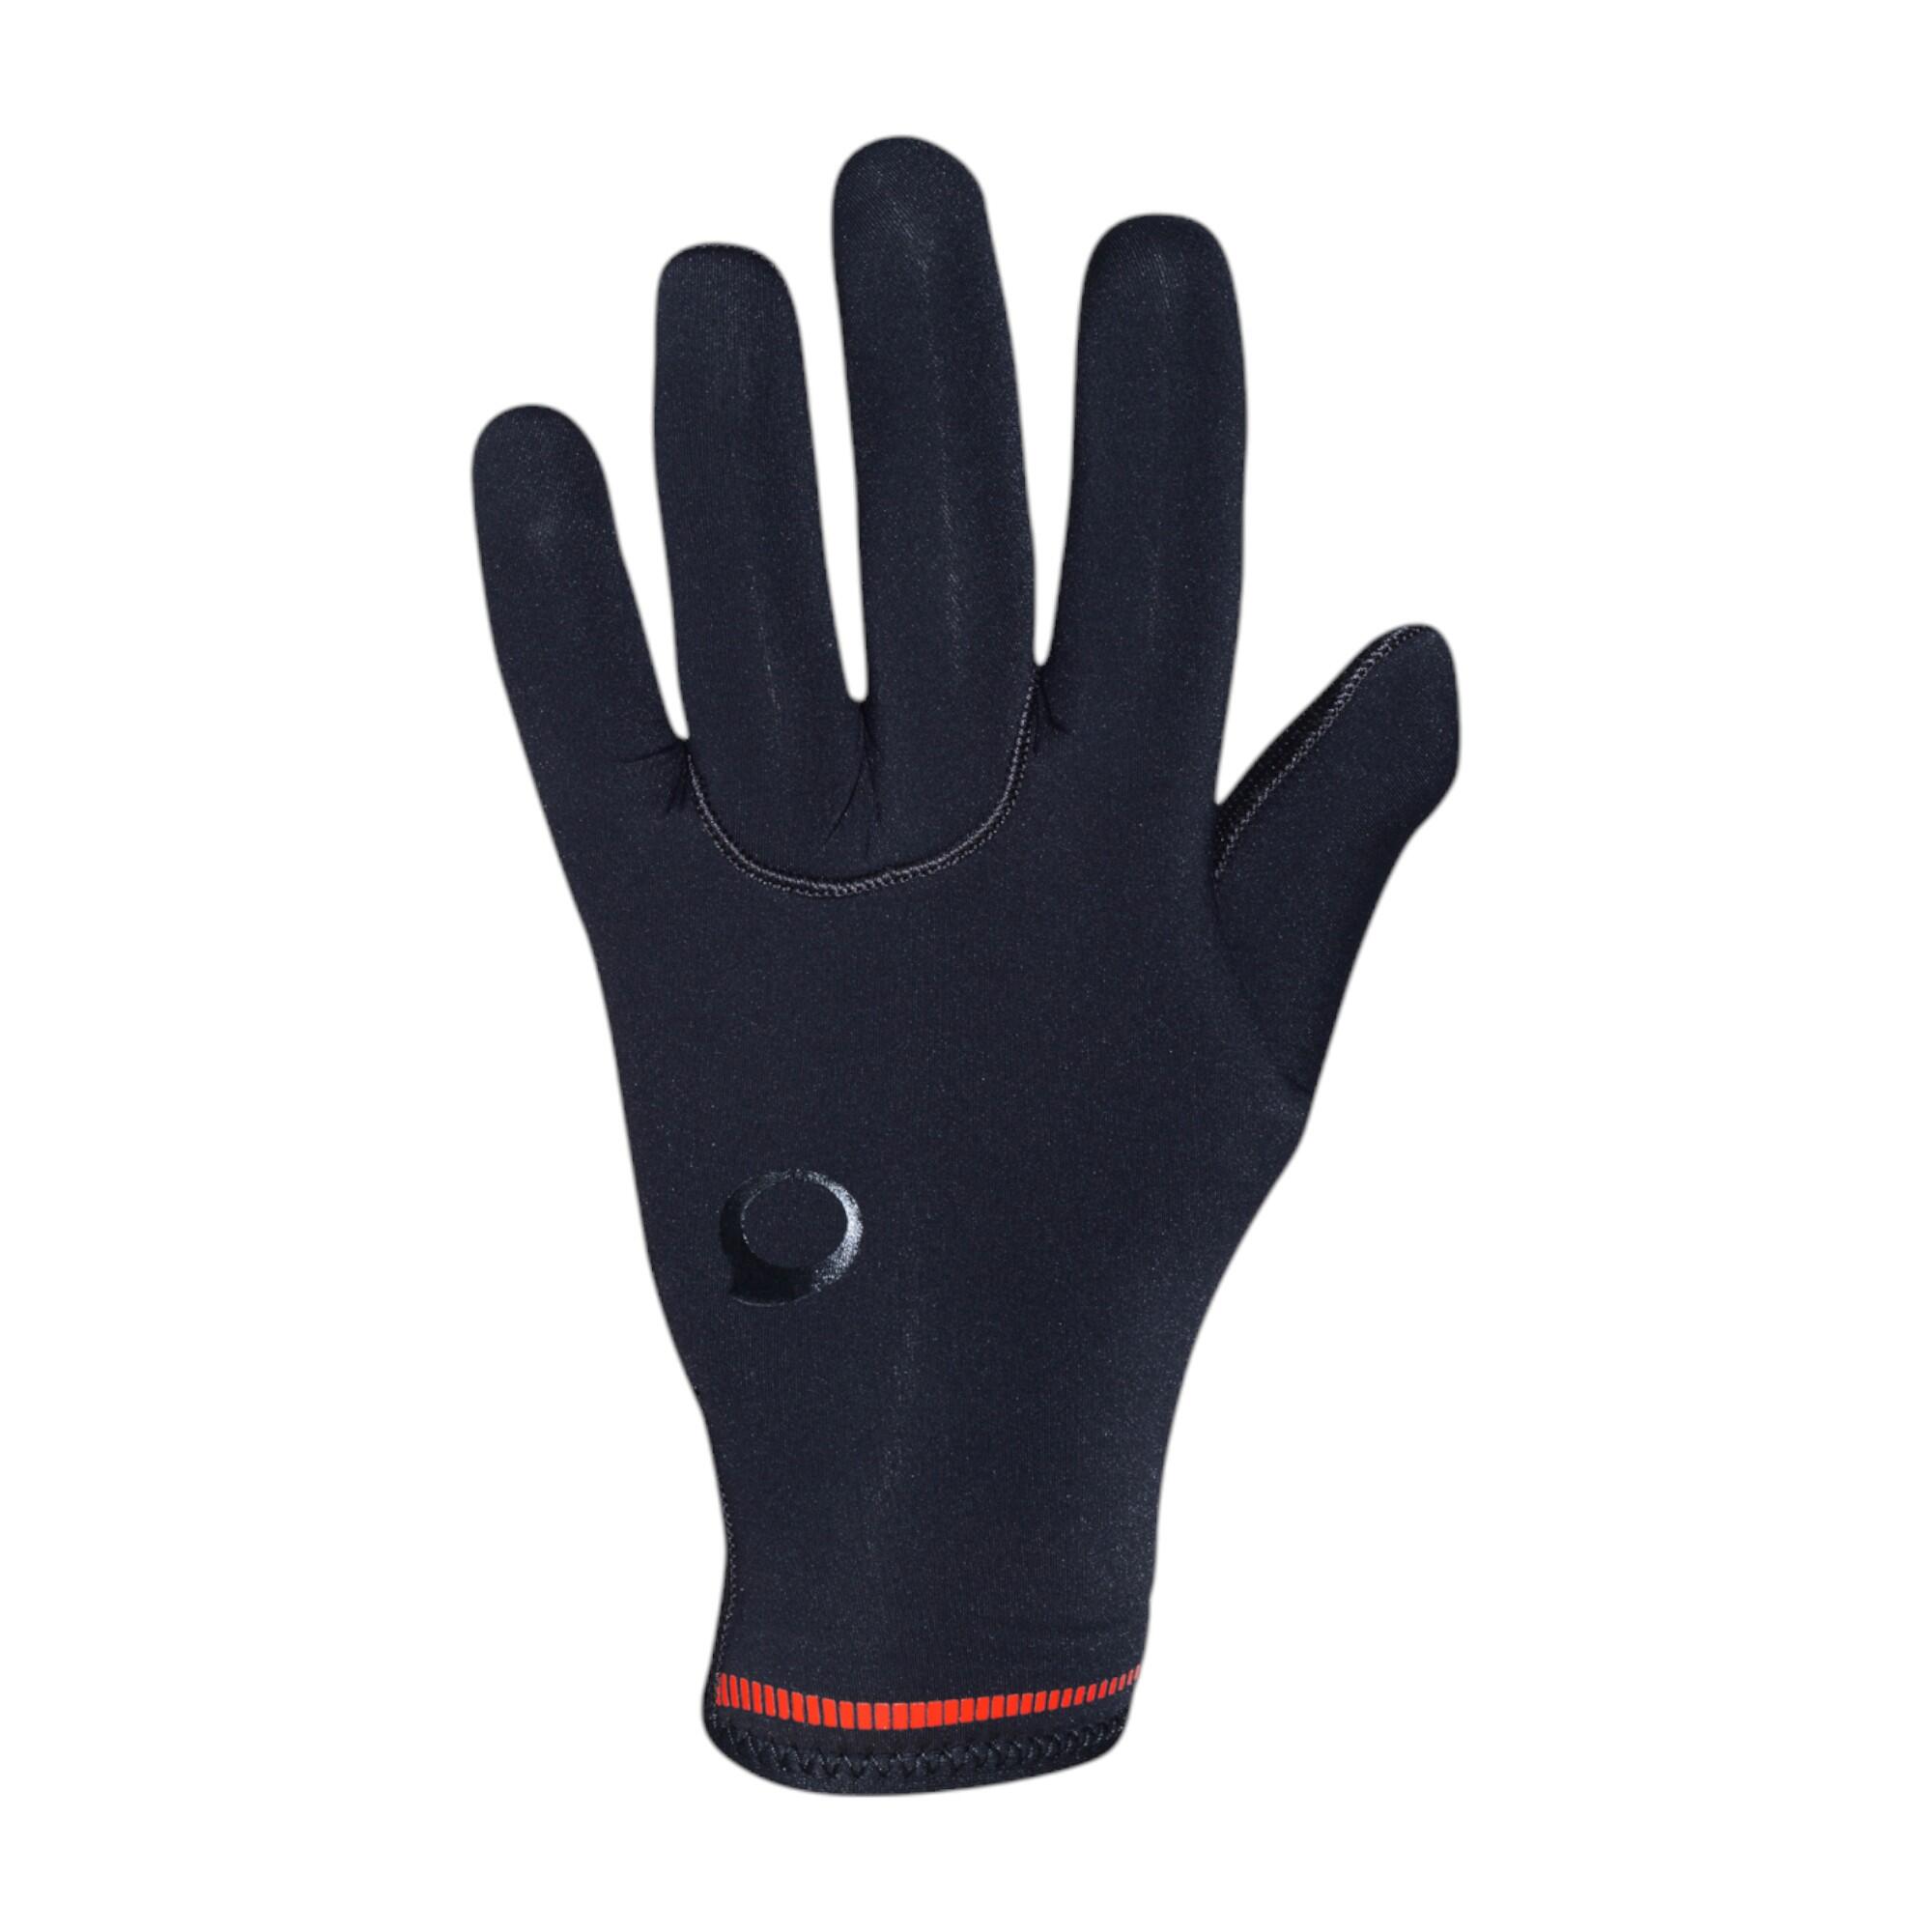 Neoprene Gloves for Scuba Diving